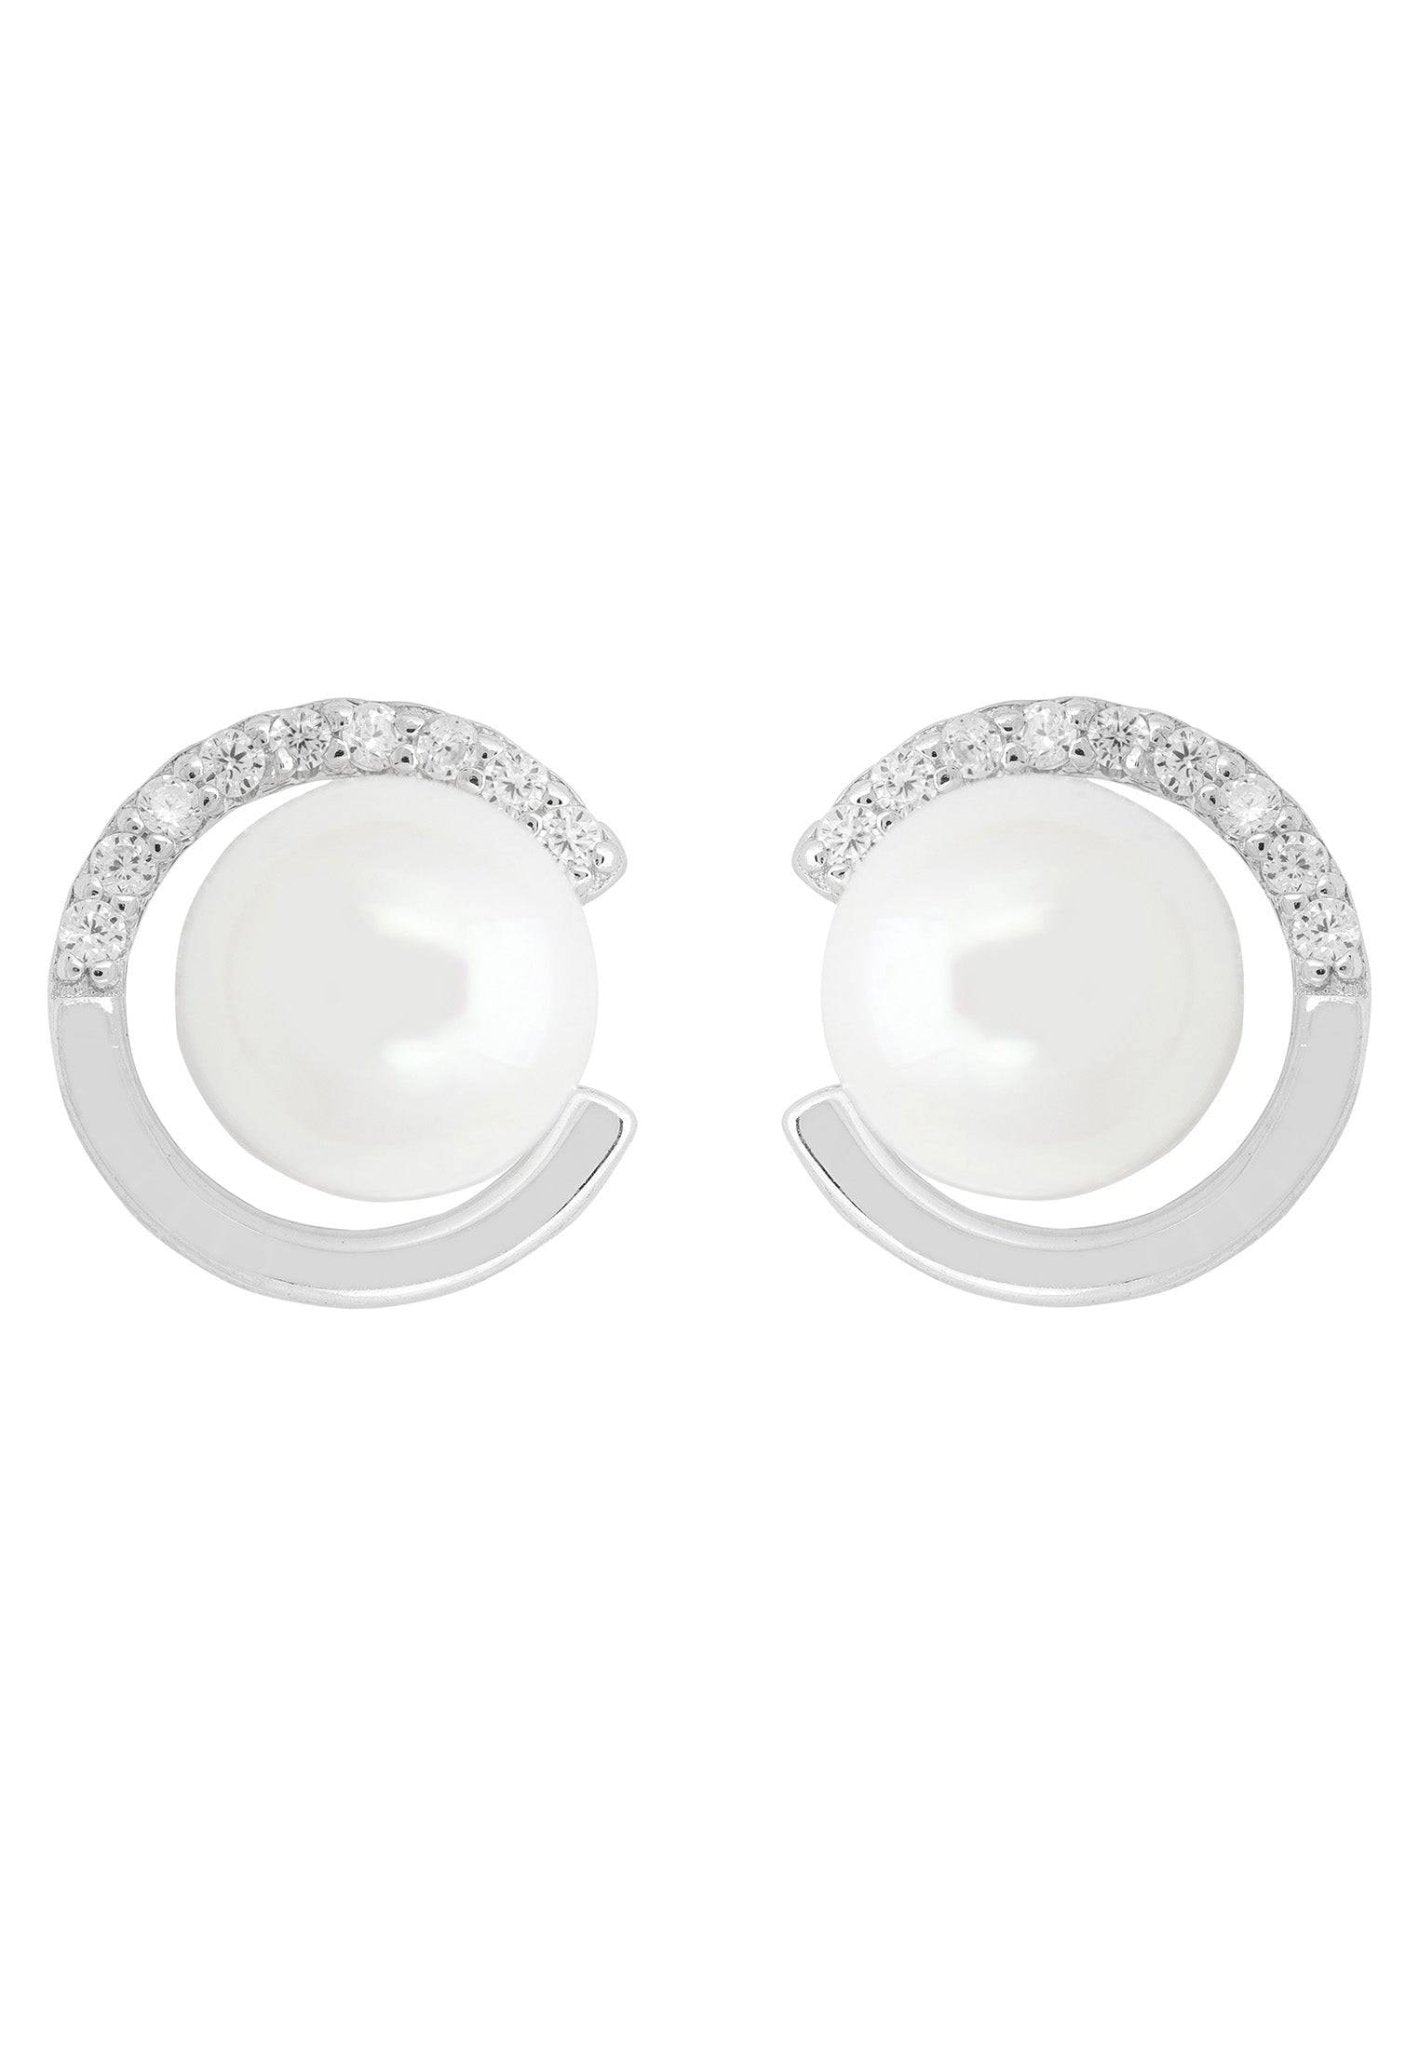 Pearl Halo Stud Earrings Silver - LATELITA Earrings